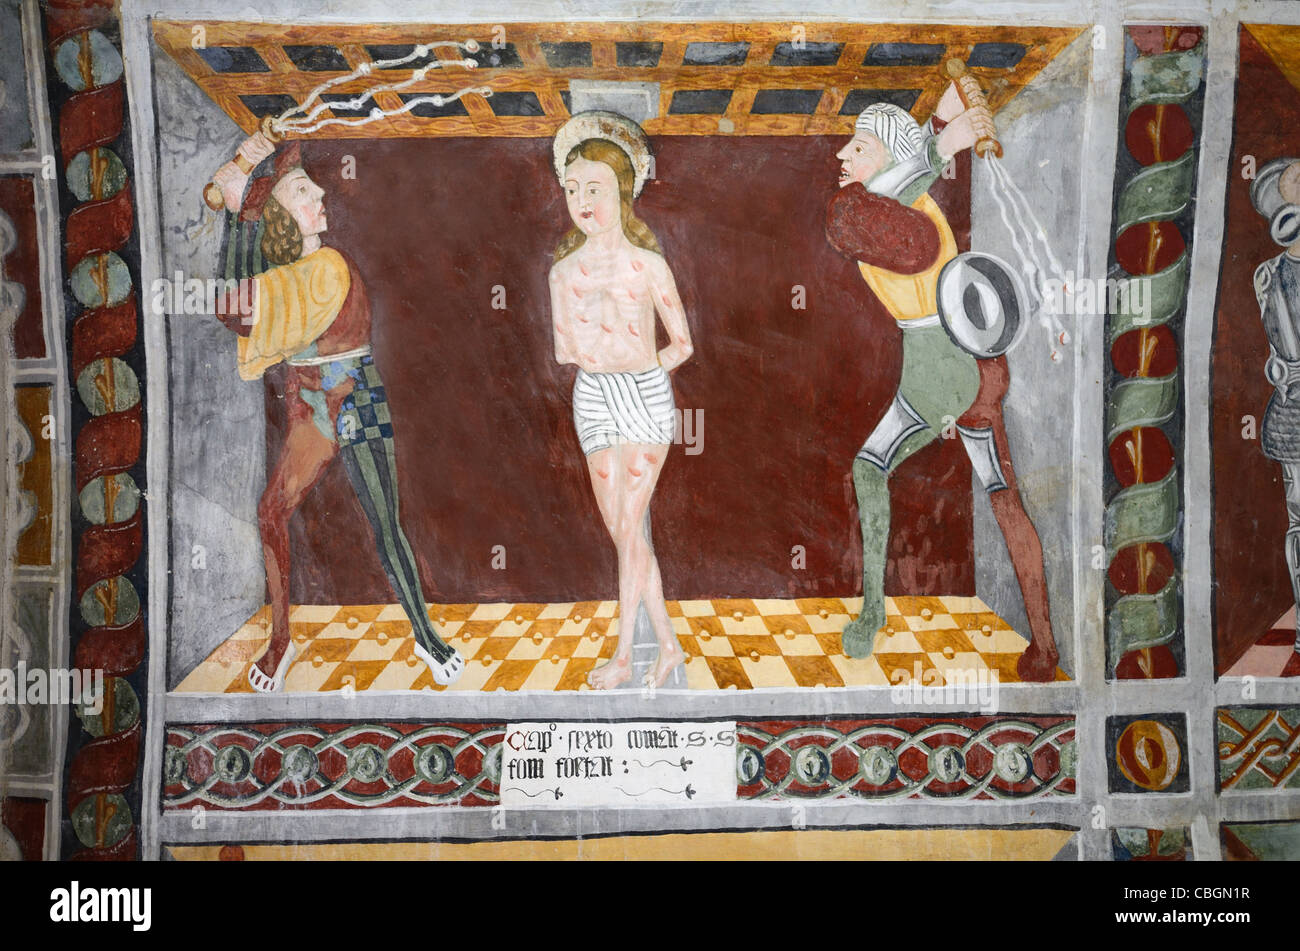 Flagellation de Saint Sébastien, fresque peinture murale ou dans la chapelle de St Sébastien (1513), Roubion, Alpes-Maritimes, France Banque D'Images